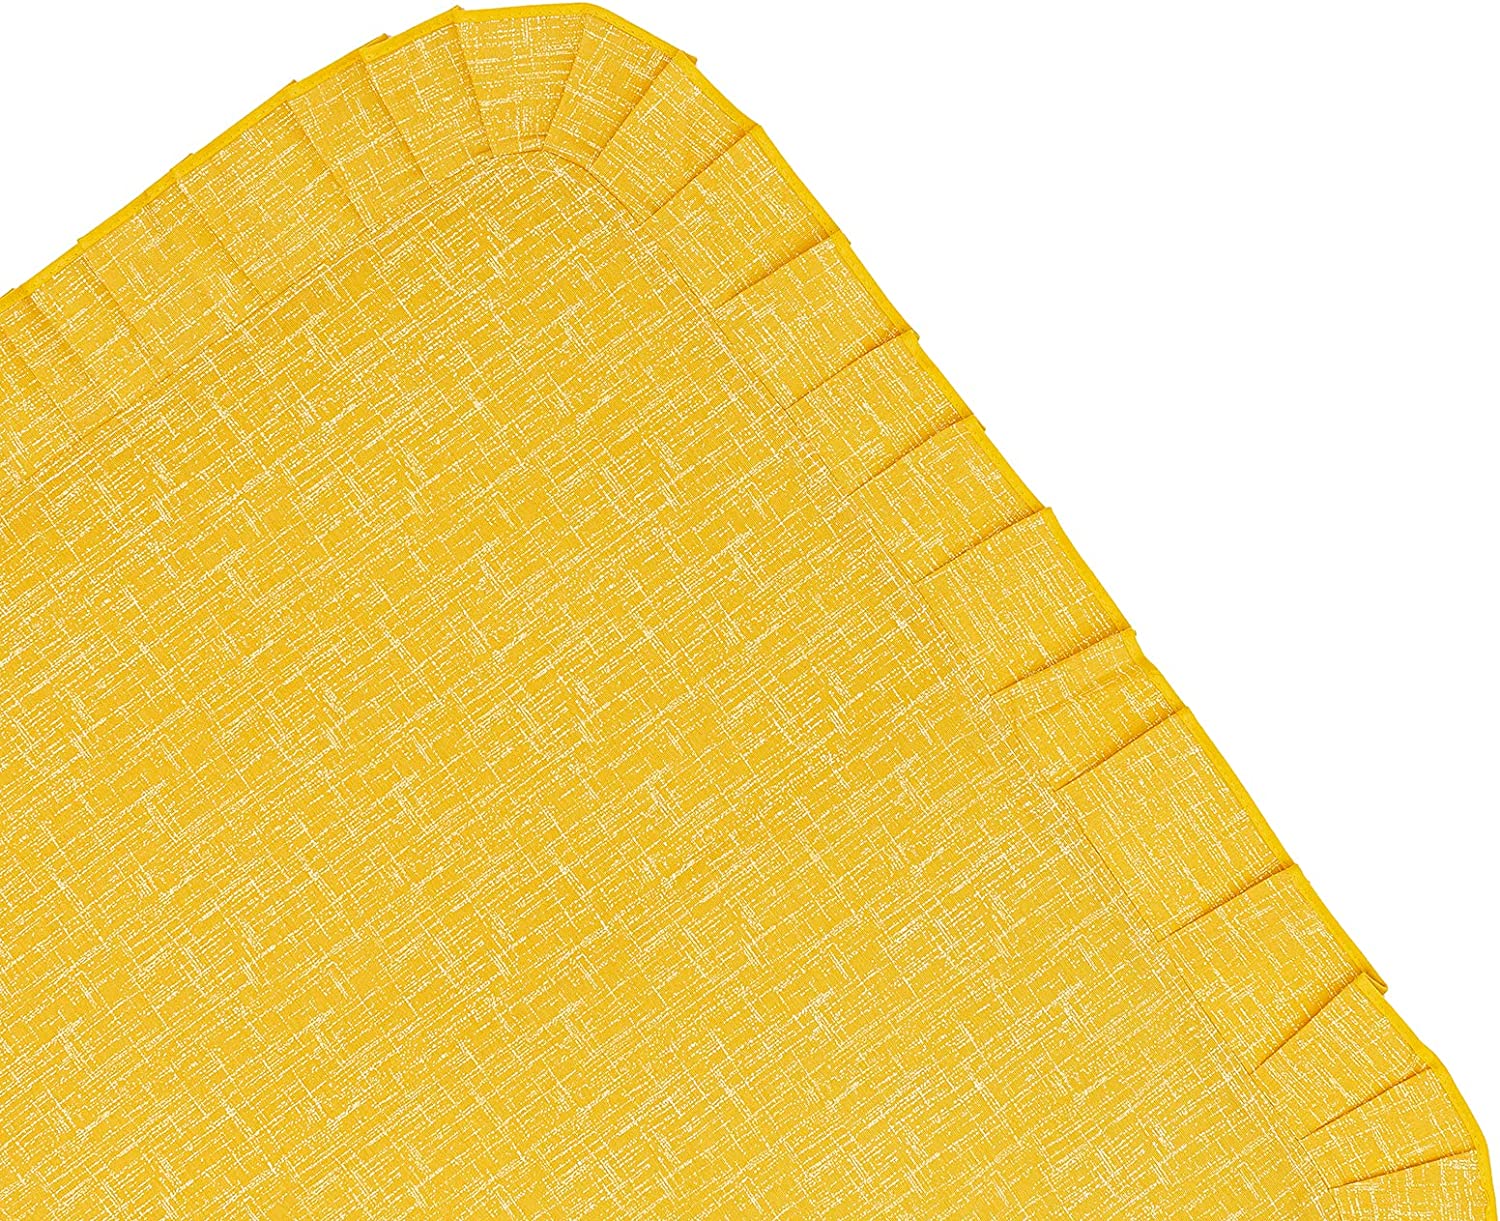 Tovaglia Copritavolo Plastificata Rettangolare Unito Stile Shabby Chic Antimacchia Impermeabile Tavola da Pranzo Cucina Giardino 140 x170 cm